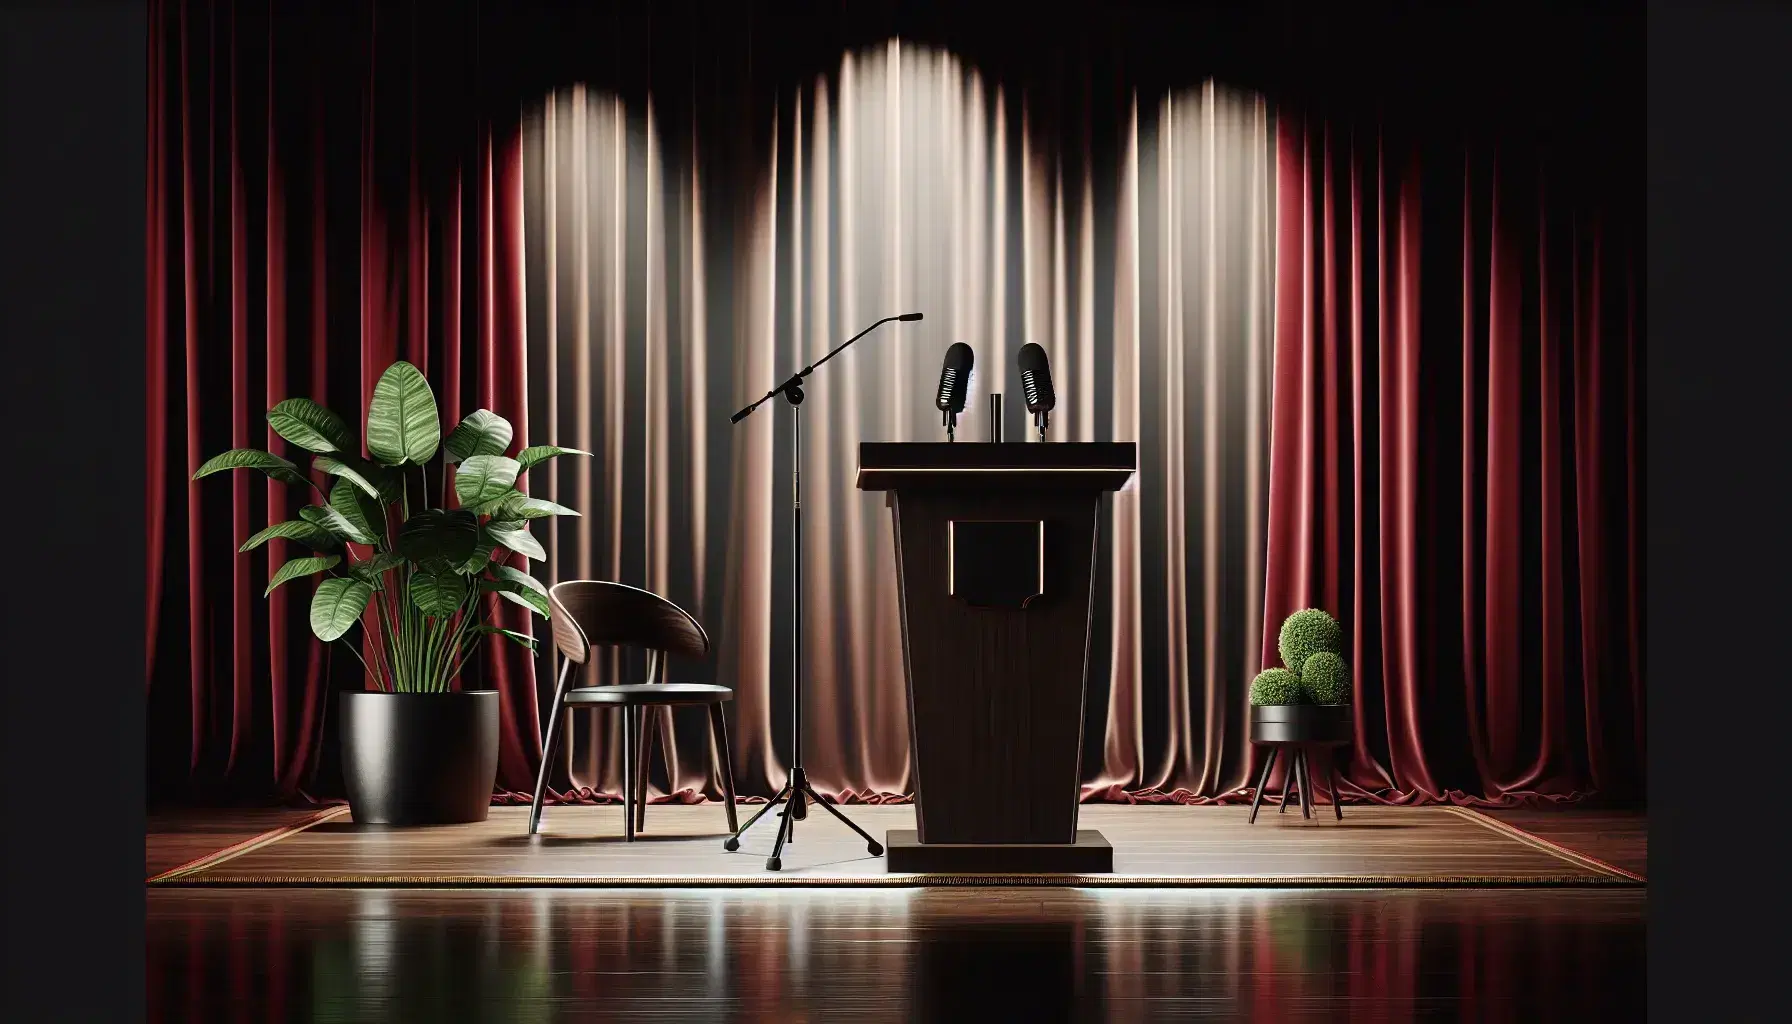 Podio de madera oscura con micrófono negro en un escenario con cortinas de terciopelo rojo, planta interior y silla de madera a los lados, bajo iluminación focalizada.